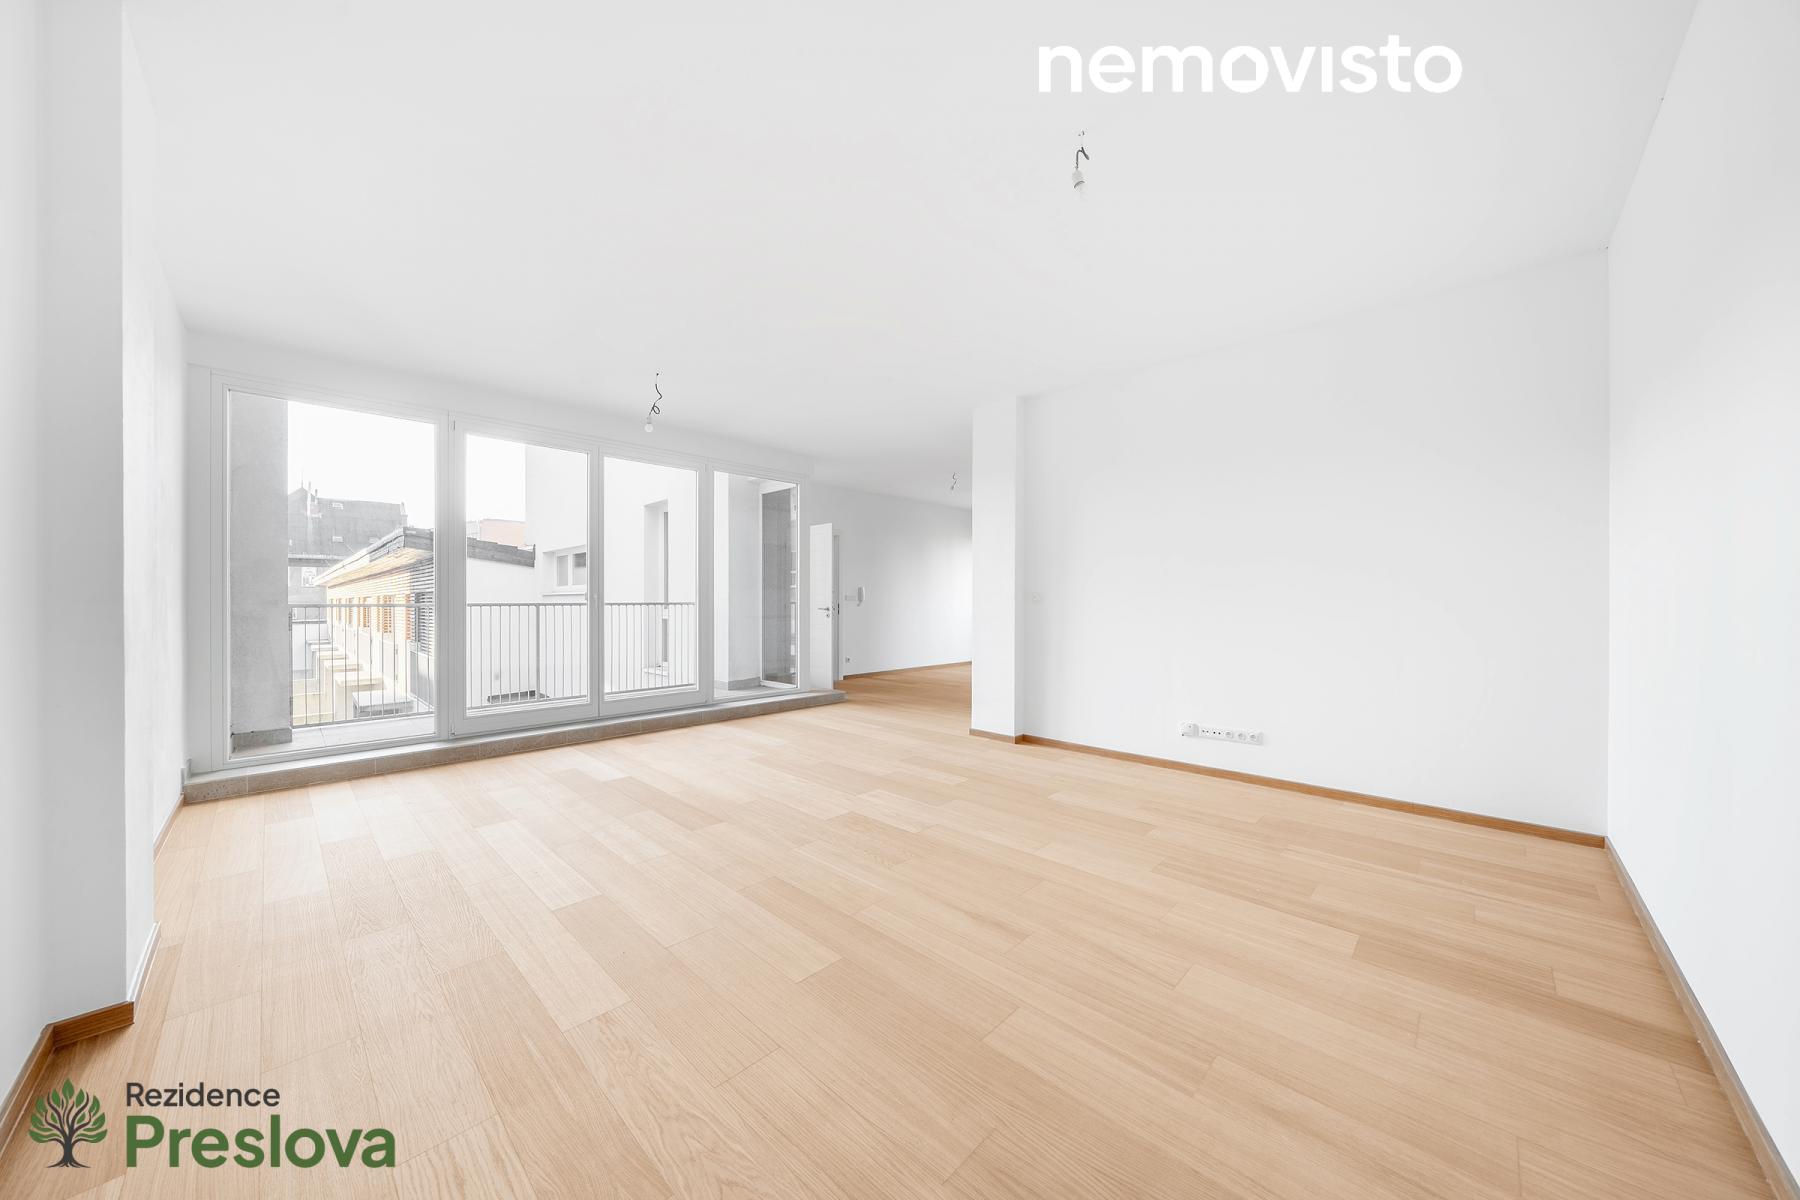 Prodej, novostavba bytu 3+kk s terasou, ul. Preslova, Ostrava - centrum, 129 m2, obrázek č. 2